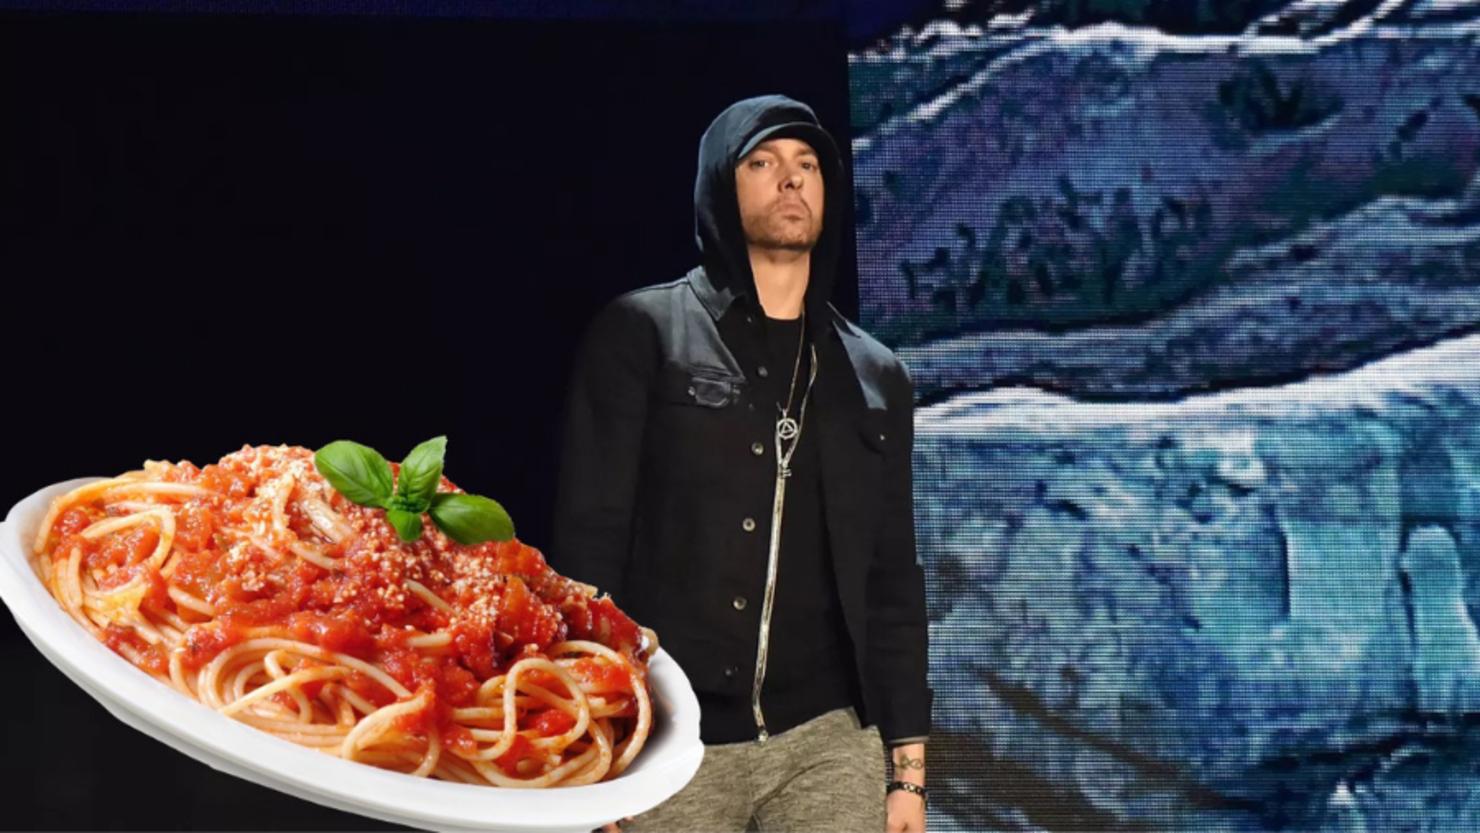 Eminem restaurant 'Mom's Spaghetti' to open in Detroit